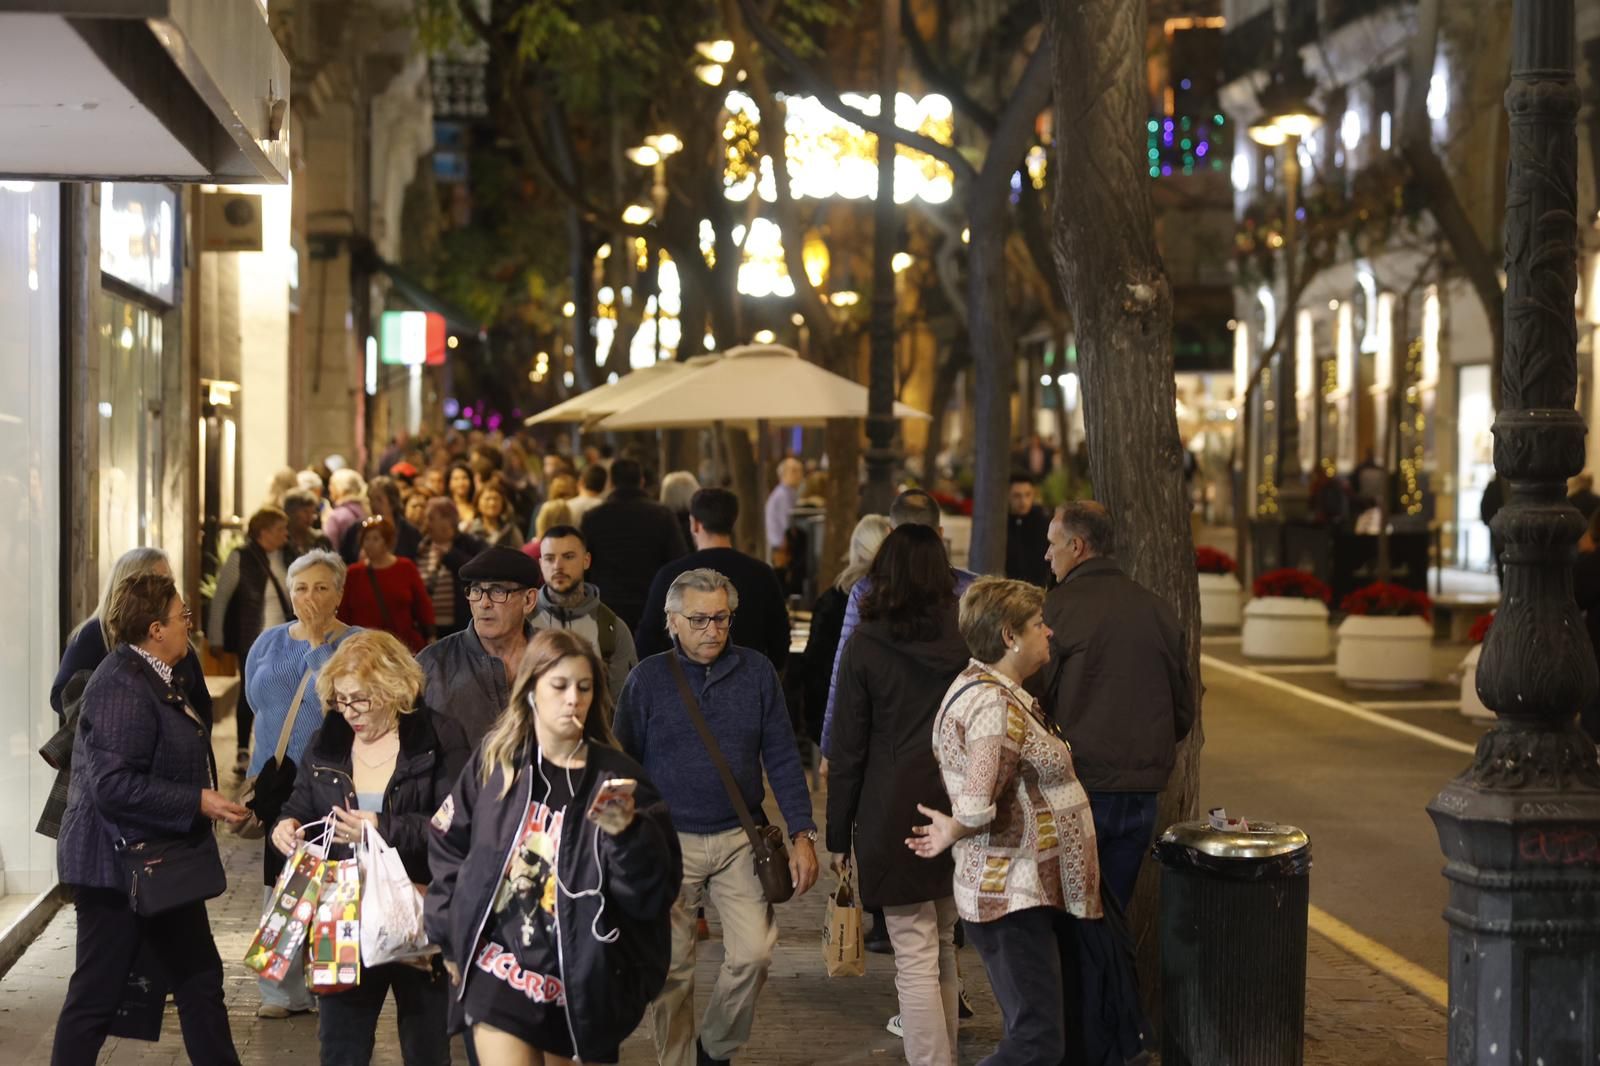 El centro de València a rebosar de gente a las puertas de las fiestas navideñas